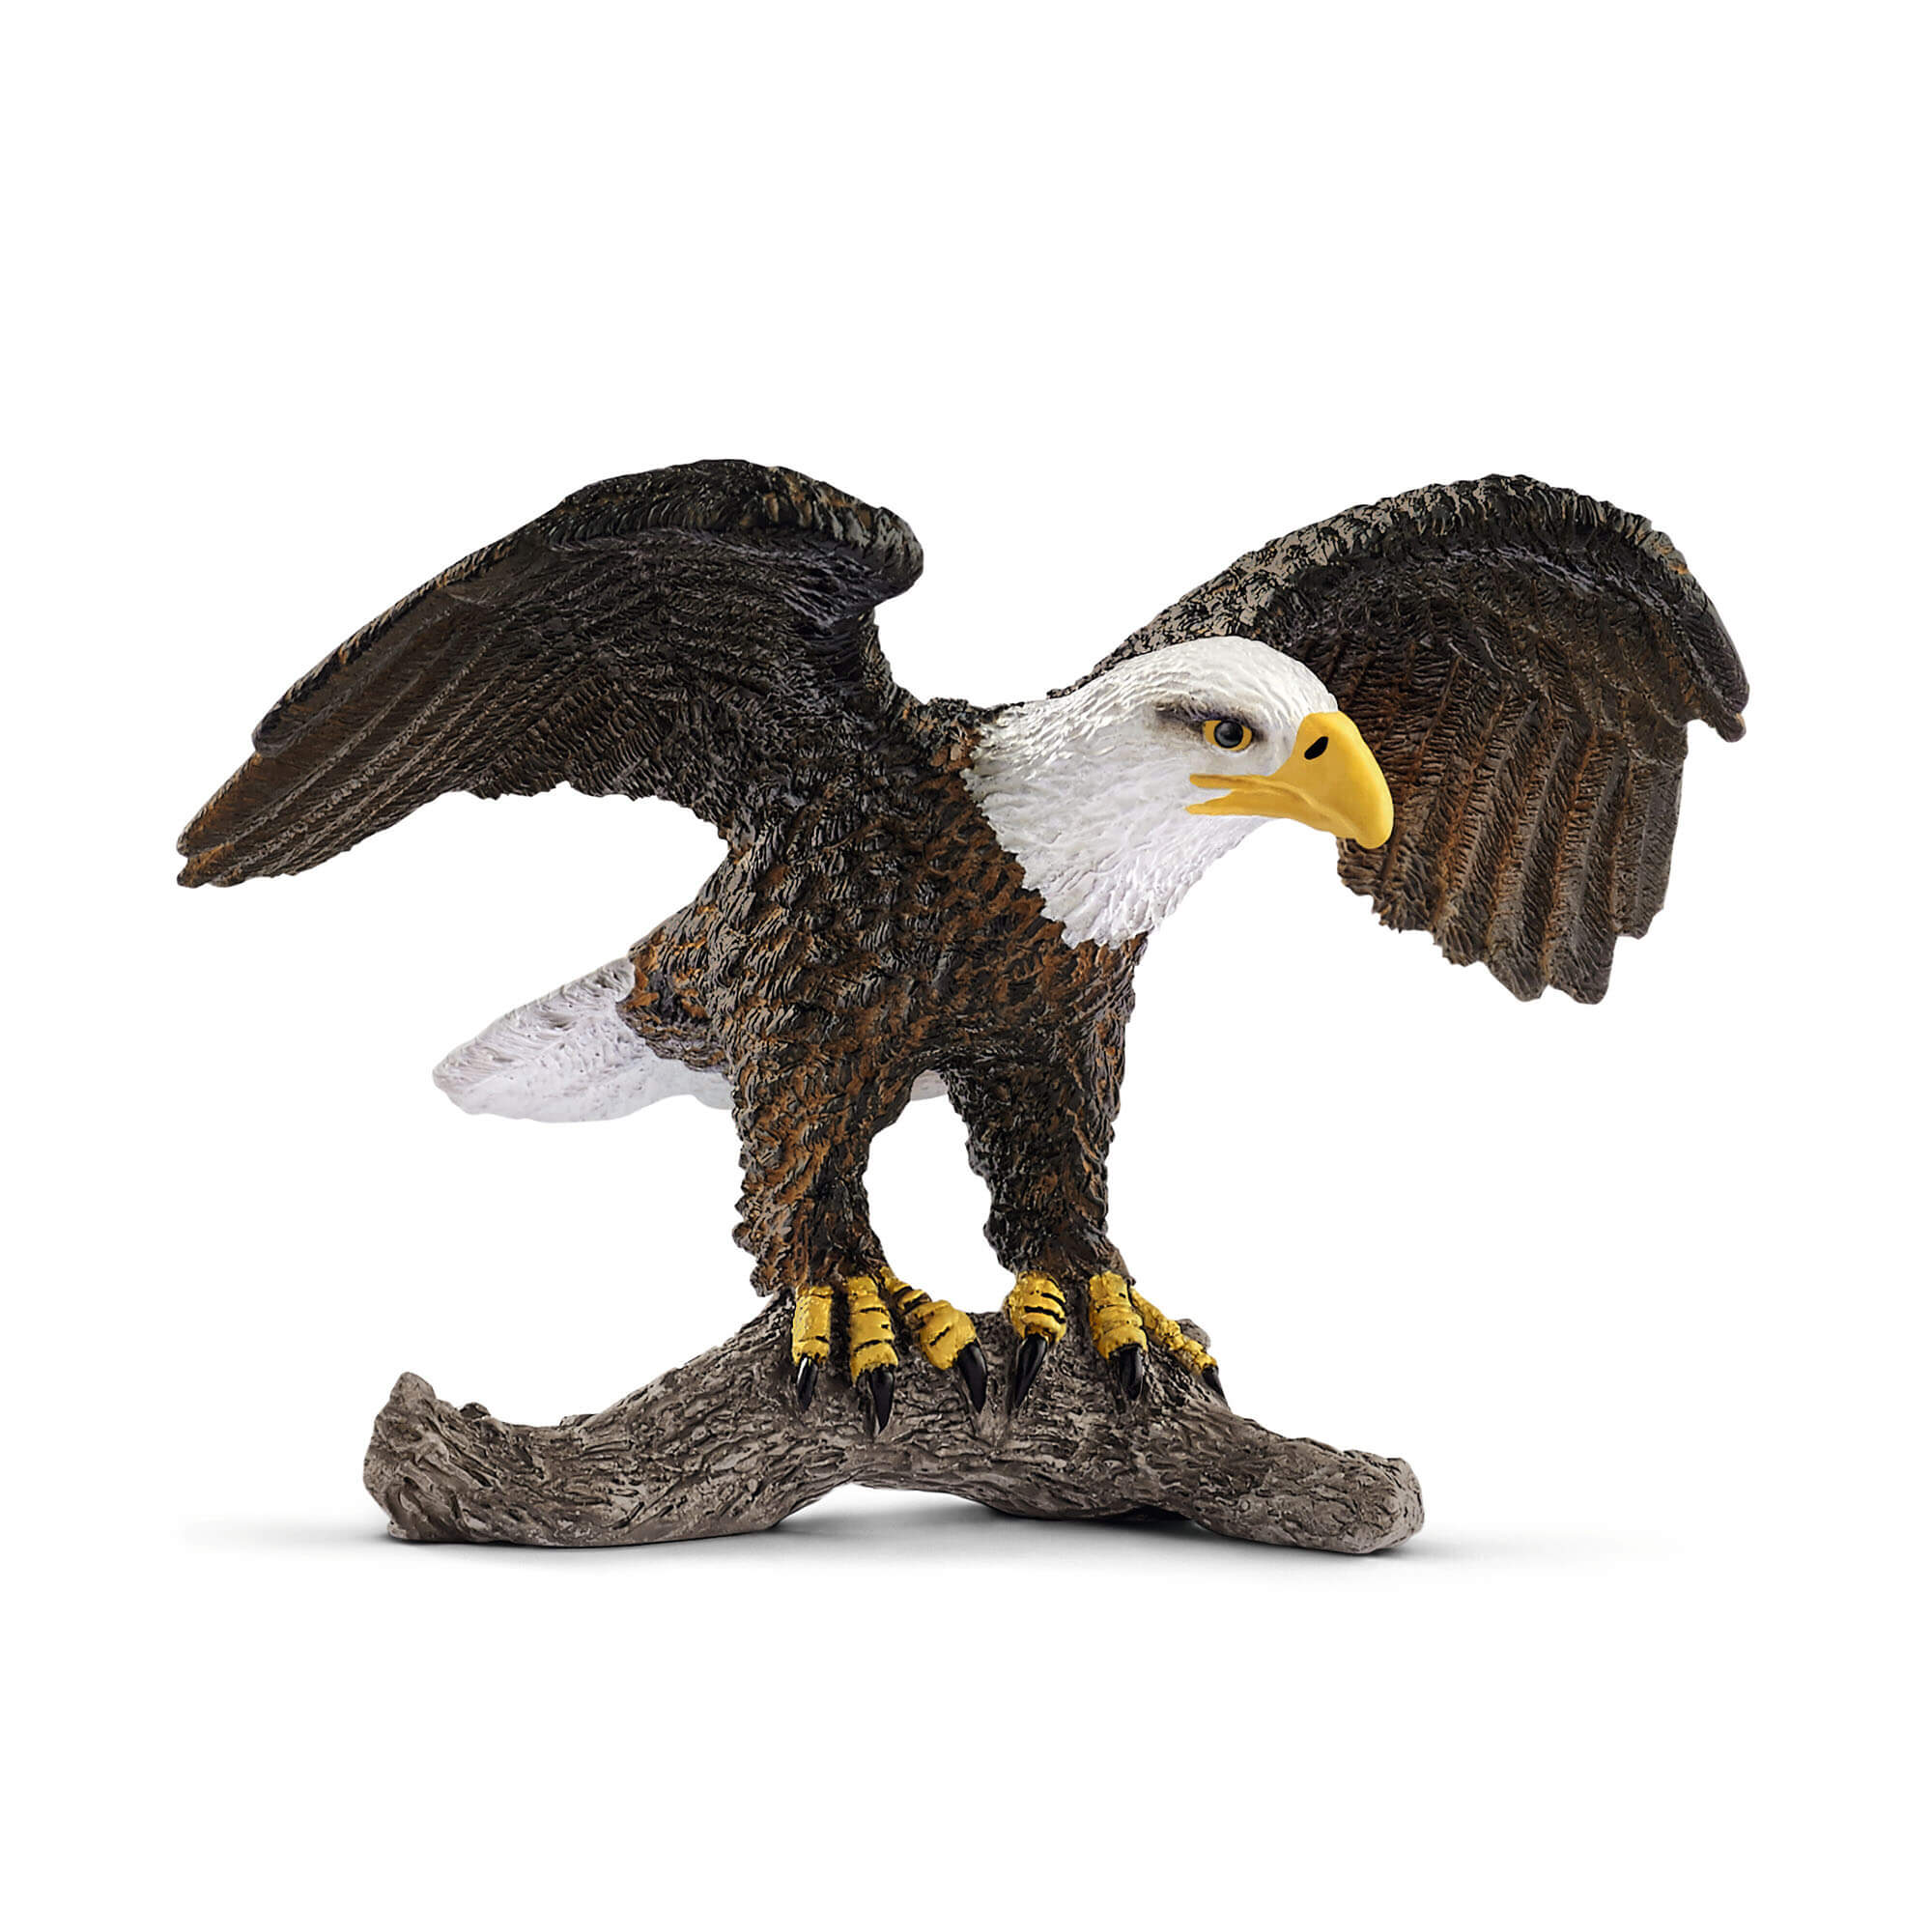 Schleich Wild Life Bald Eagle Animal Figure